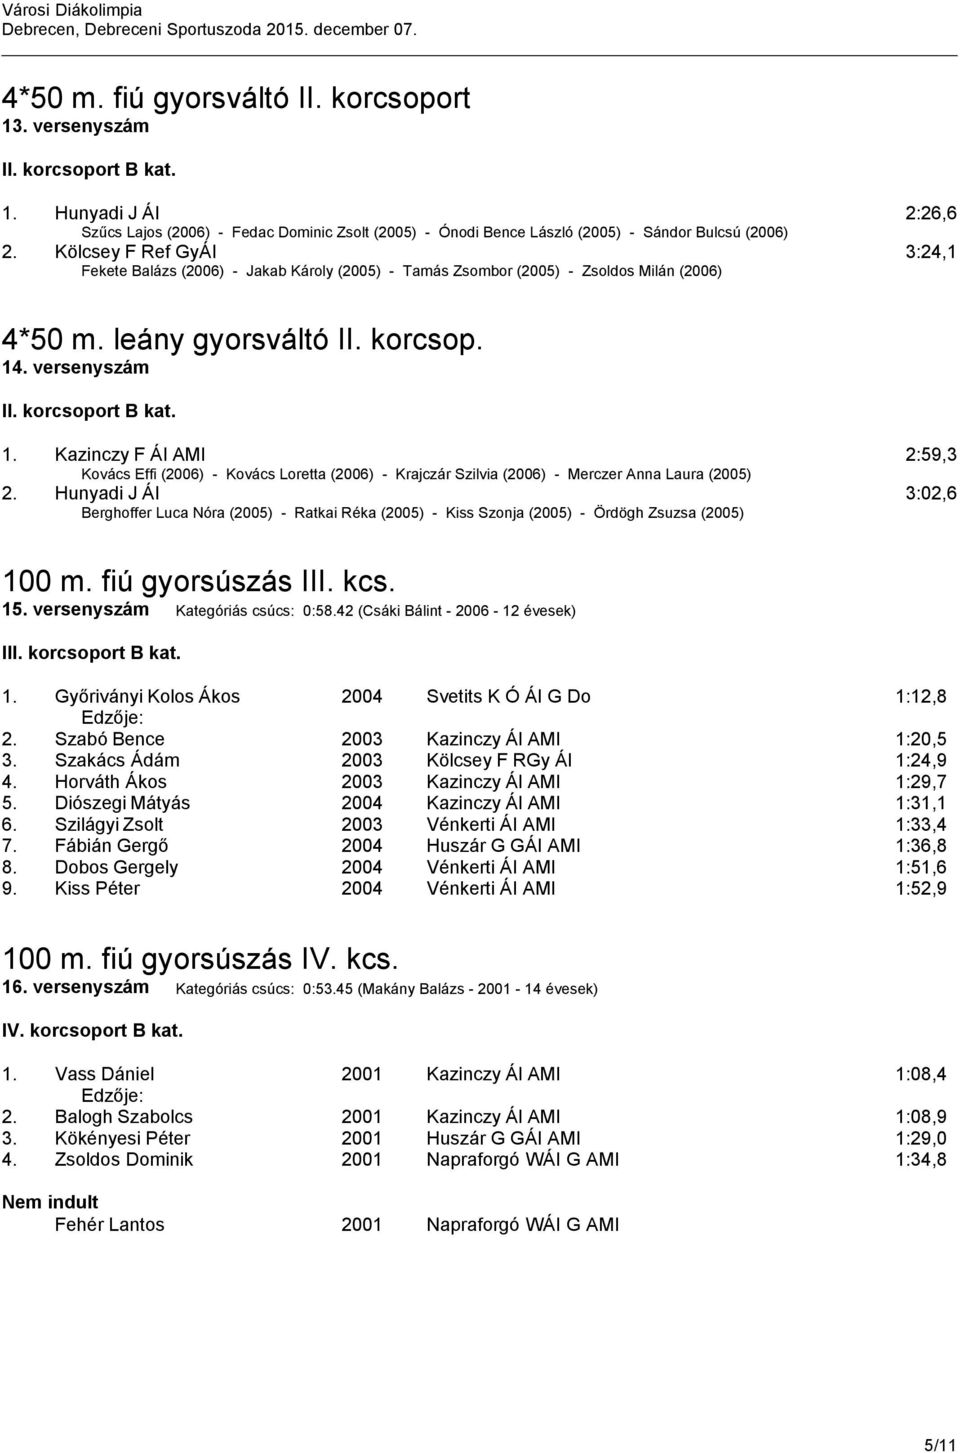 Kazinczy F ÁI AMI 2:59,3 Kovács Effi (2006) - Kovács Loretta (2006) - Krajczár Szilvia (2006) - Merczer Anna Laura (2005) 2.